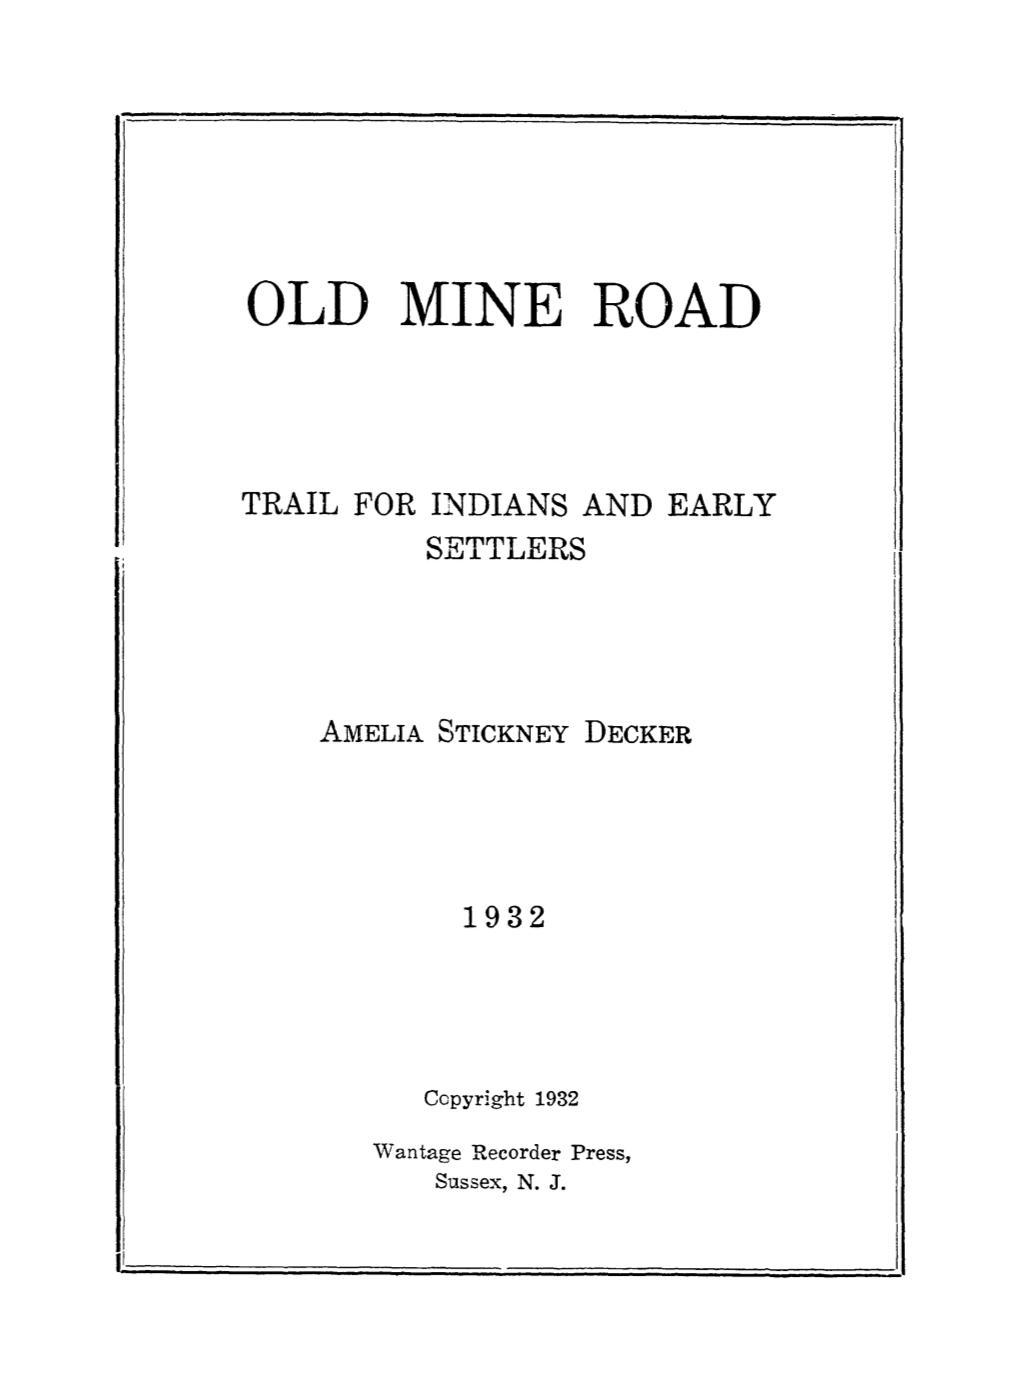 Old Mine Road